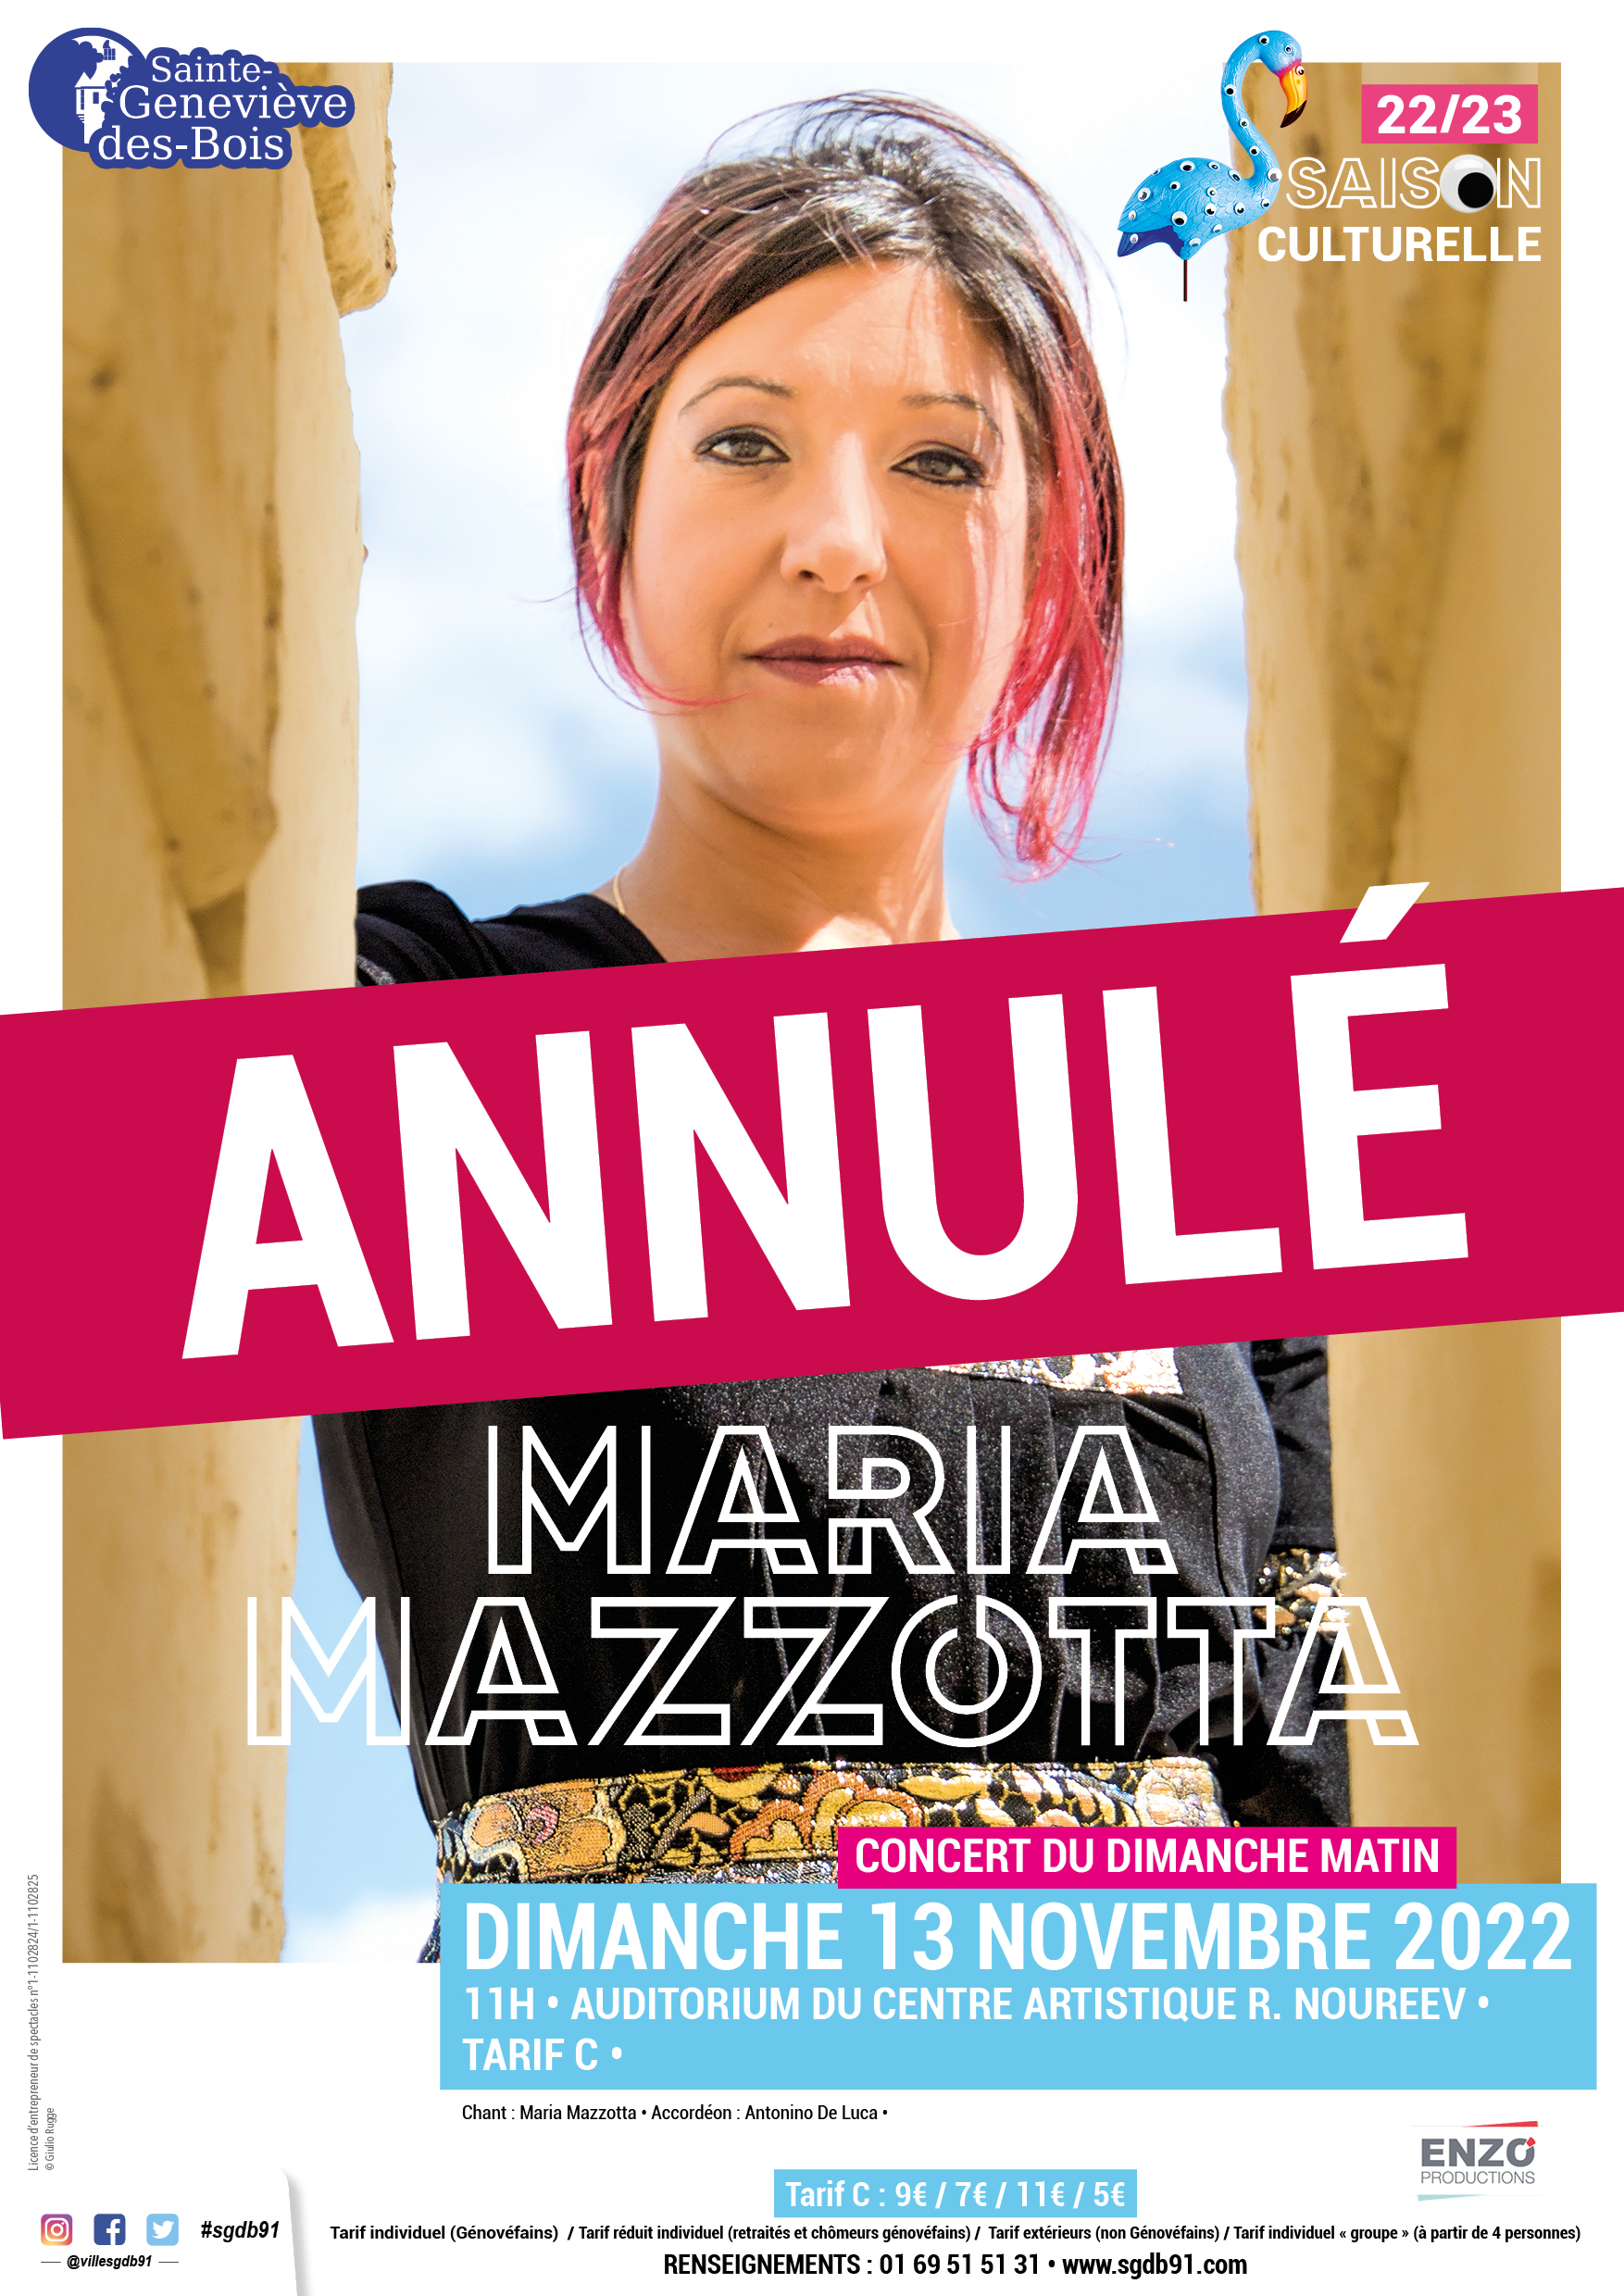 2022 11 04 Saison culturelle - maria mazotta - affiche A3 ANNULE